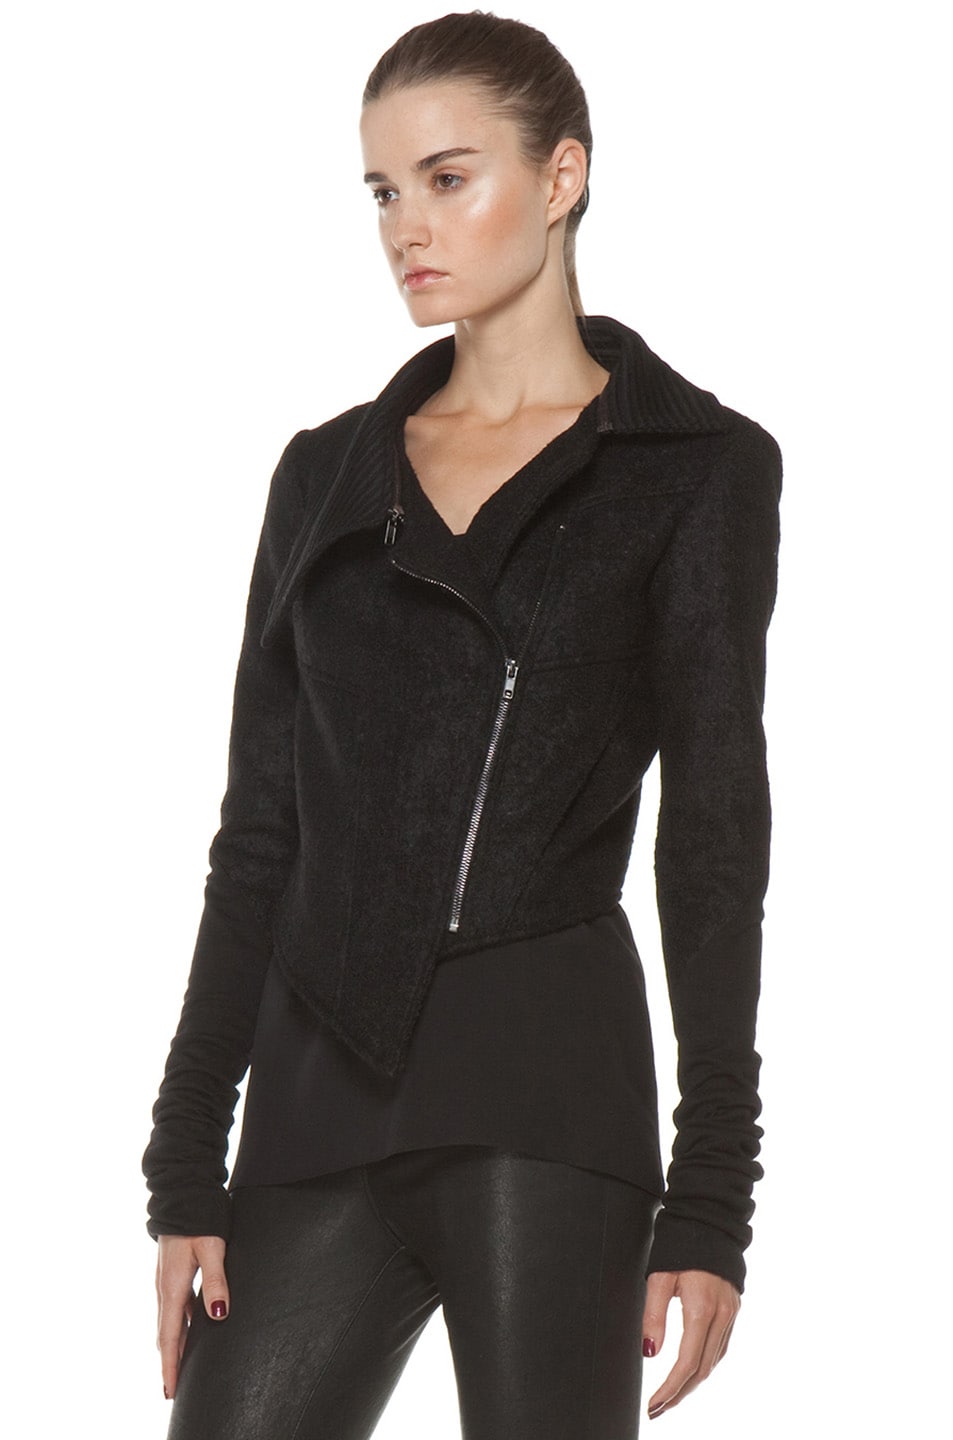 Kimberly Ovitz Kona Zip Collar Cropped Jacket in Onyx | FWRD